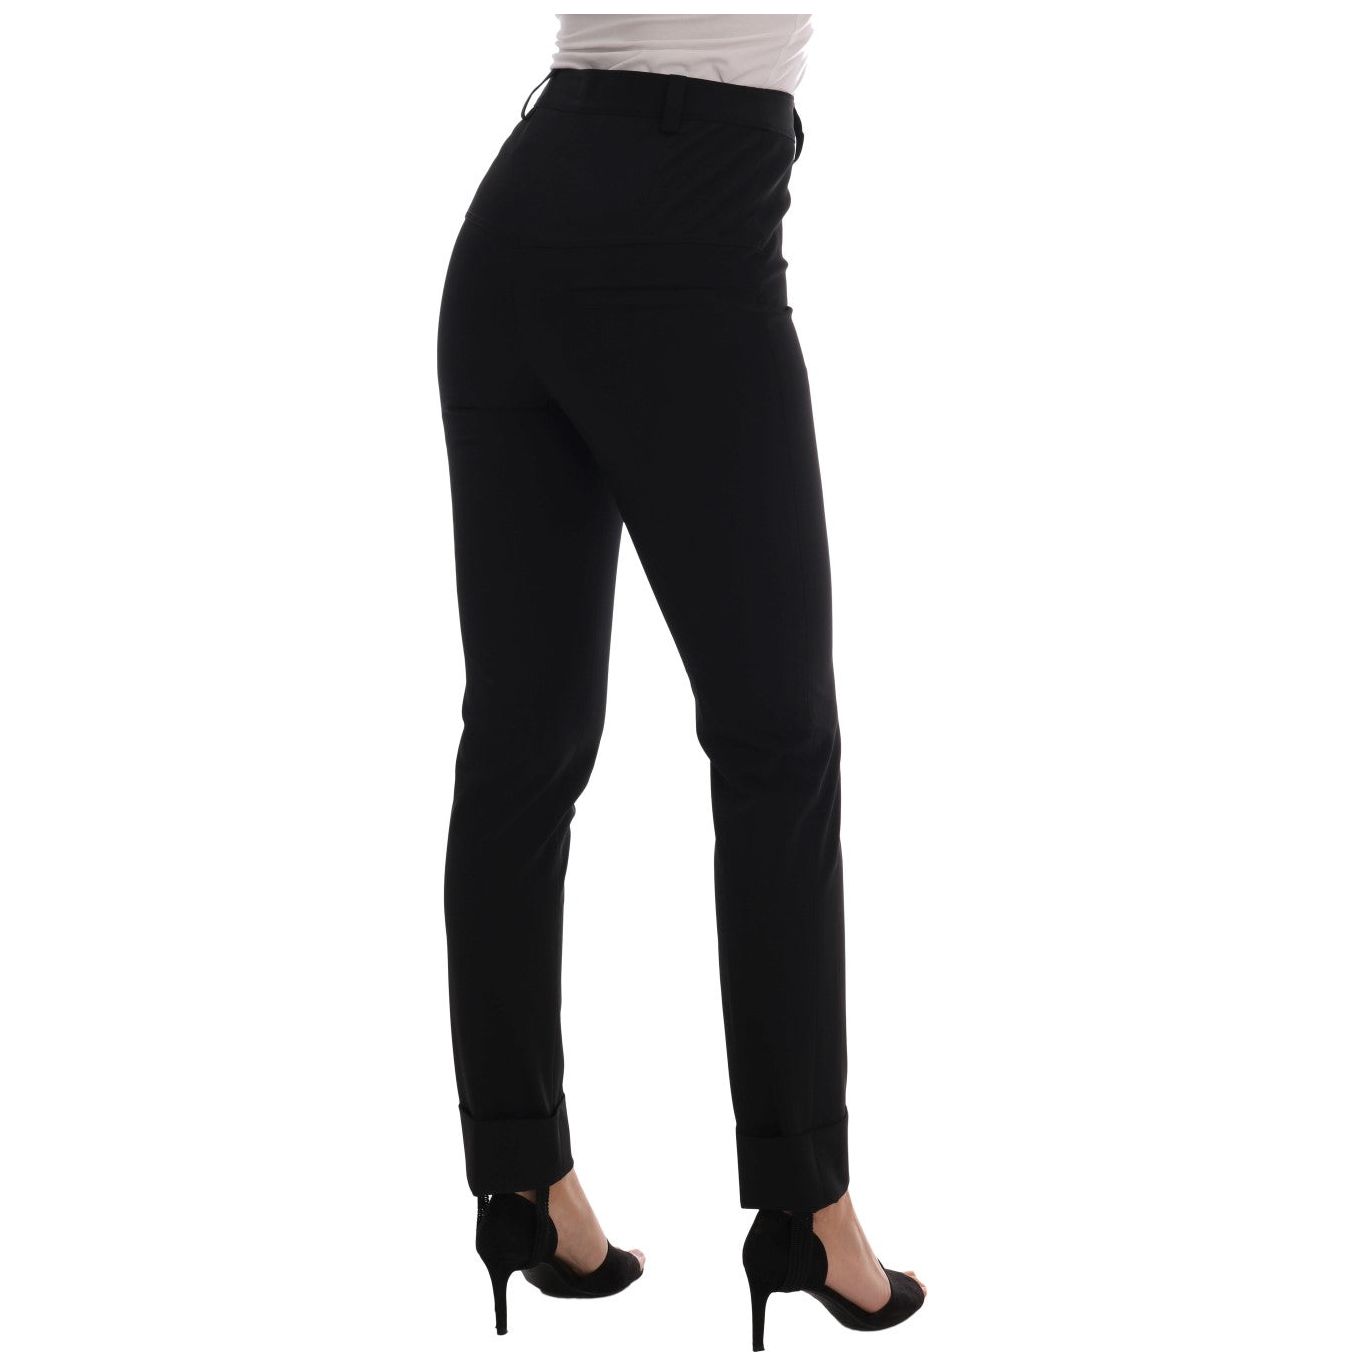 Ermanno Scervino Sleek Black Stirrup Leggings black-stretch-leggings-pants Jeans & Pants 495914-black-stretch-leggings-pants-2.jpg